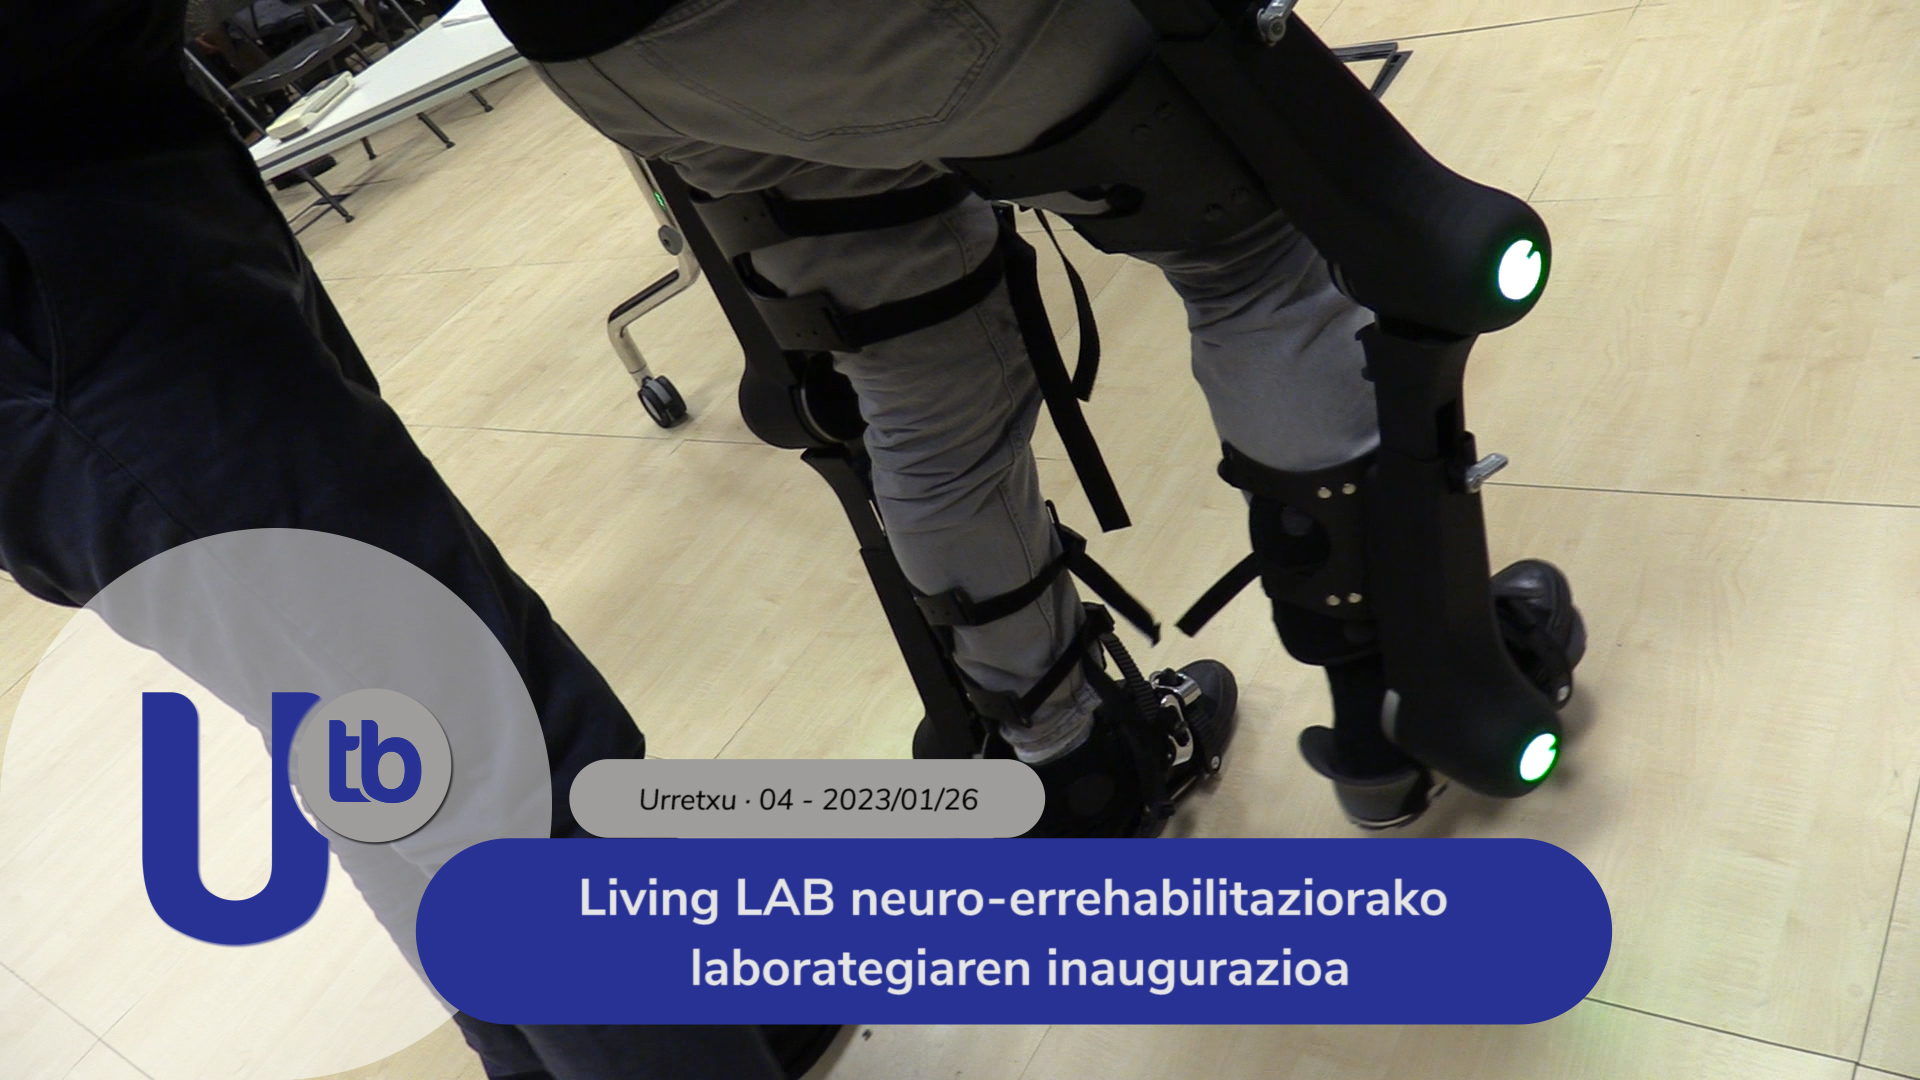 Inauguración del laboratorio de neuro-rehabilitación Living LAB / Living LAB neuro-errehabilitaziorako laborategiaren inaugurazioa